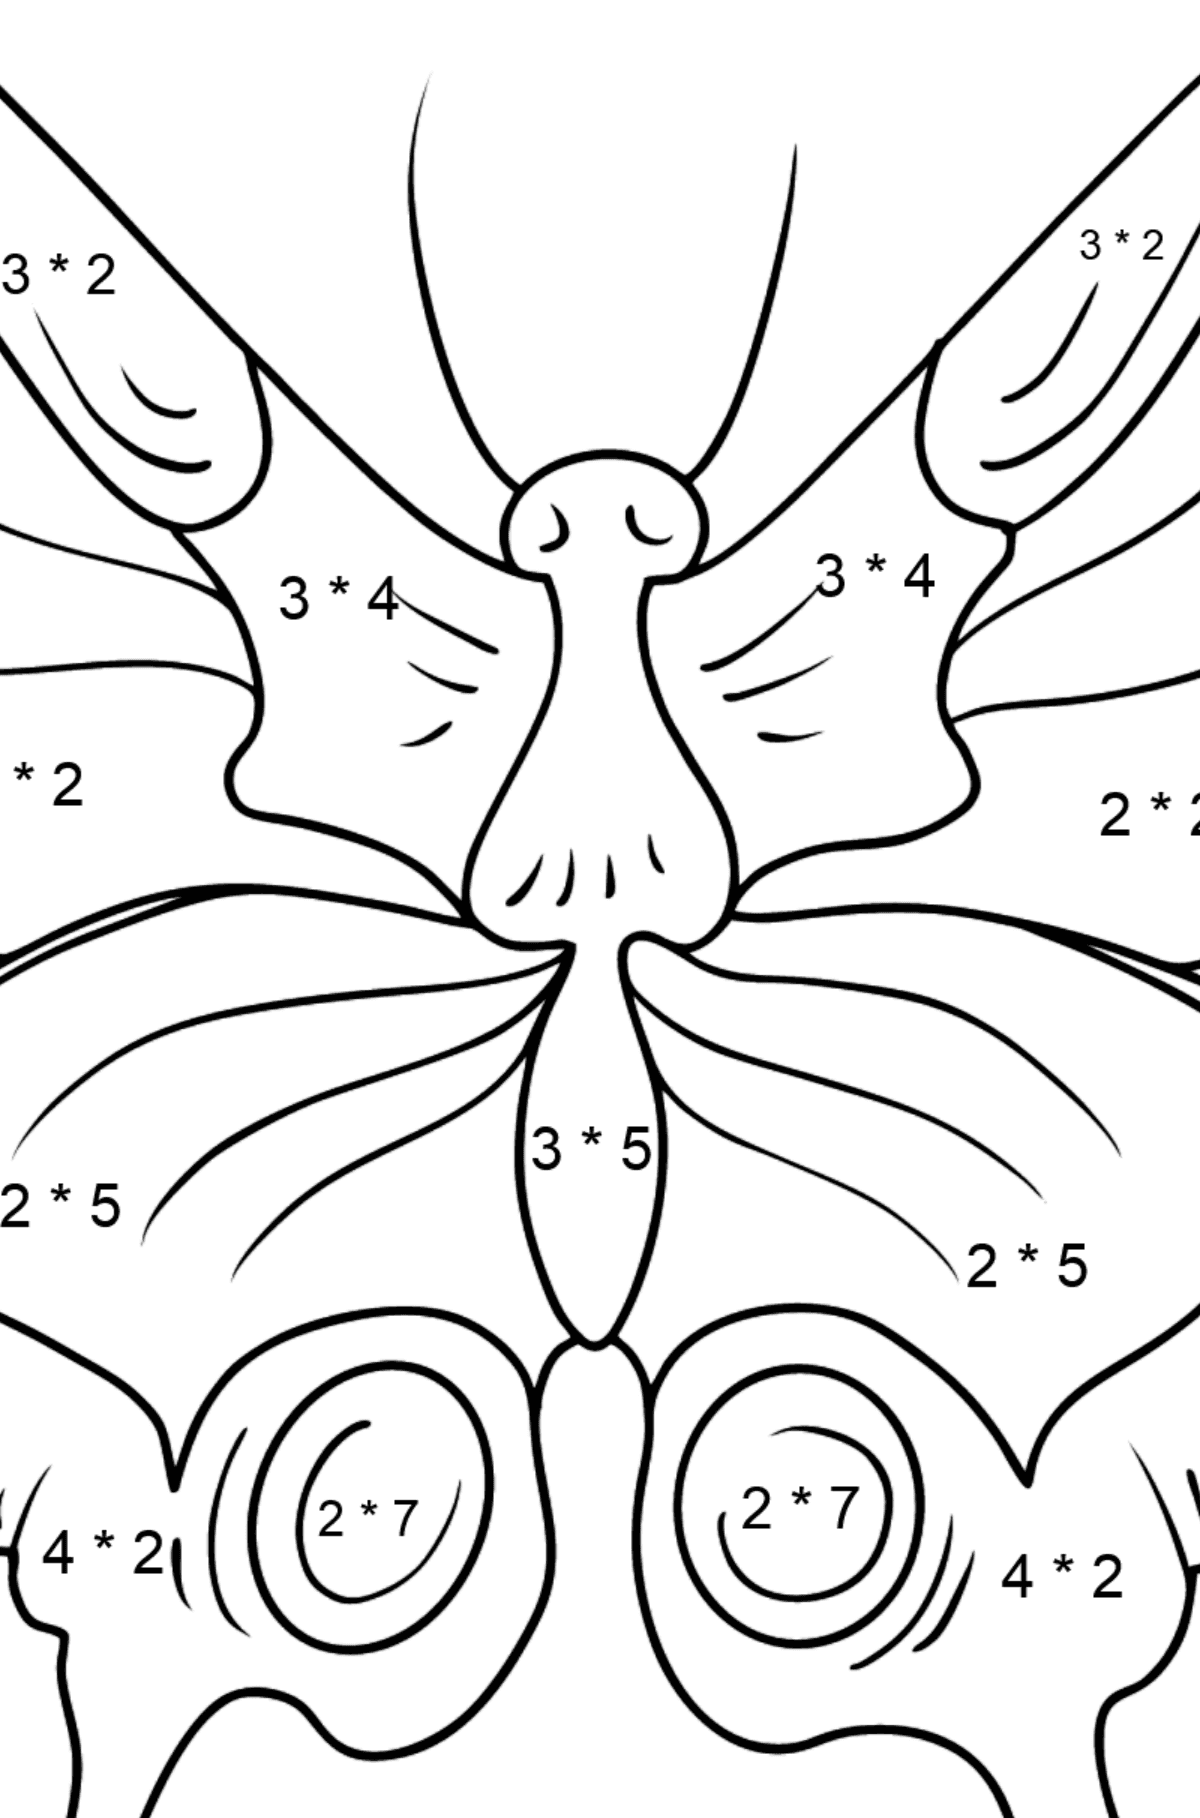 Omalovánka motýl otakárek - Matematická Omalovánka - Násobení pro děti